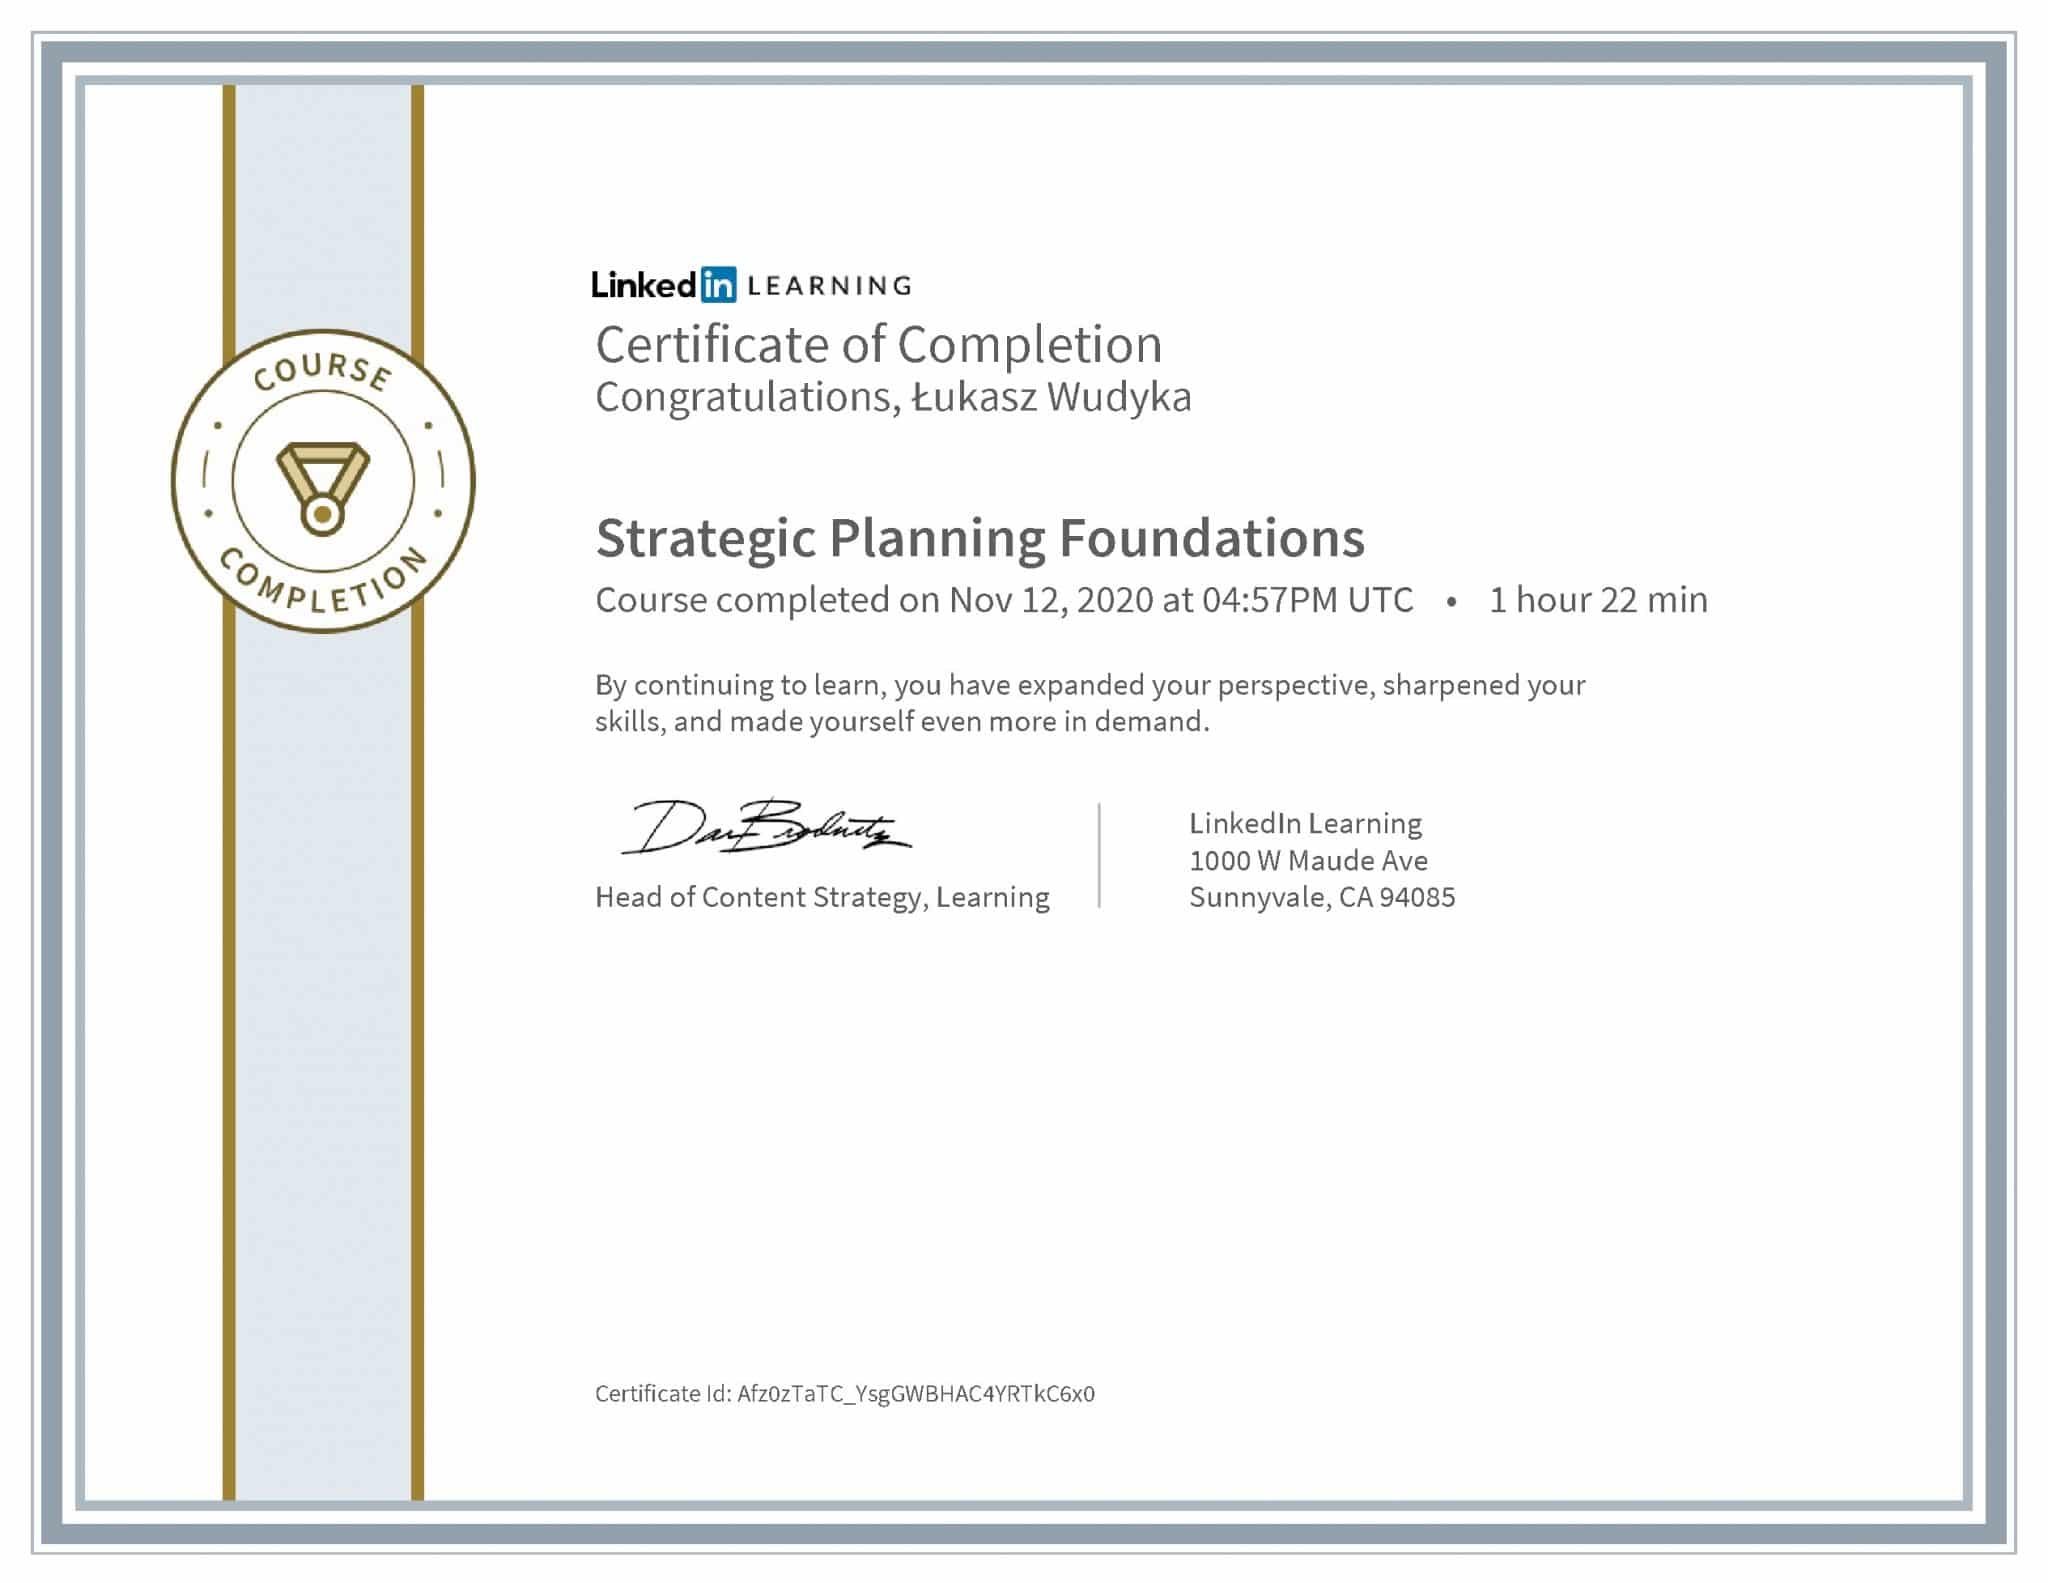 Łukasz Wudyka certyfikat LinkedIn Strategic Planning Foundations